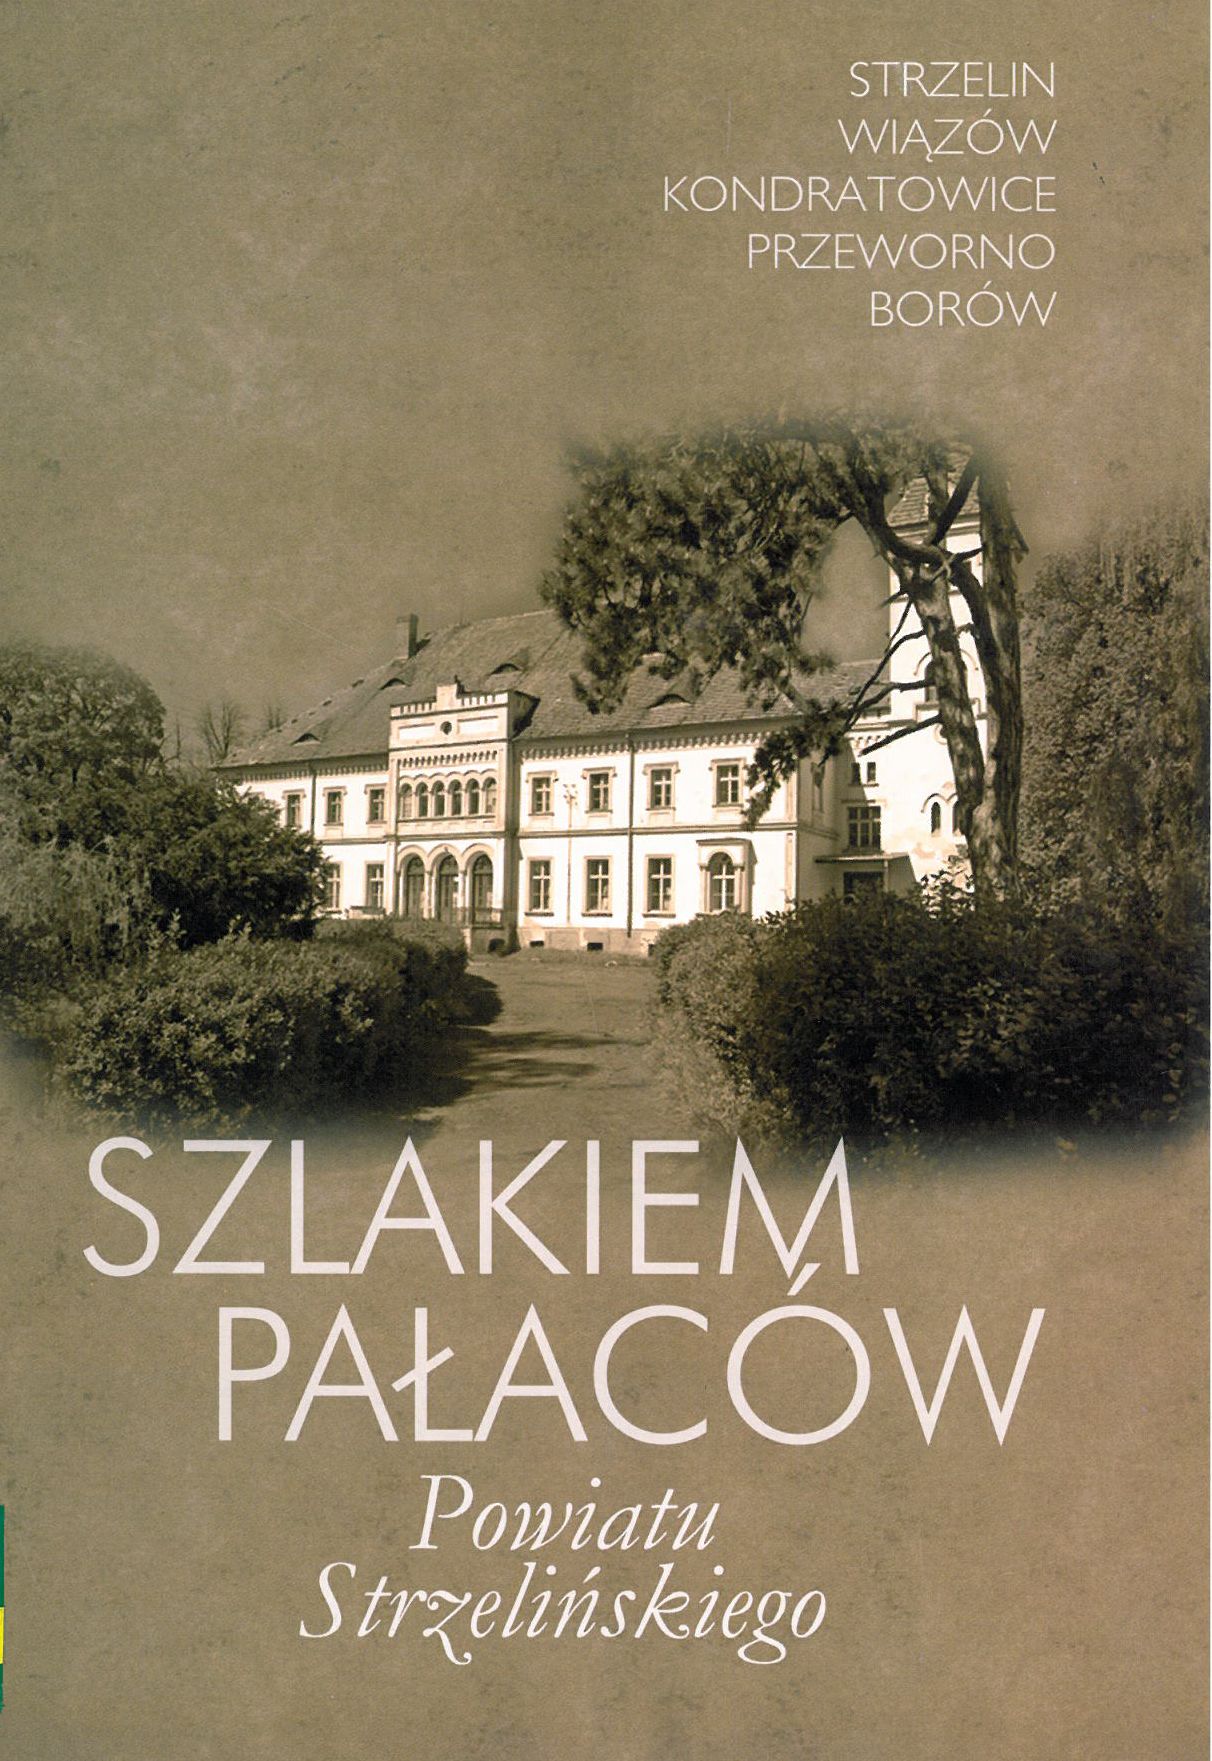 okładka książki - Szlakiem pałaców powiatu strzelińskiego